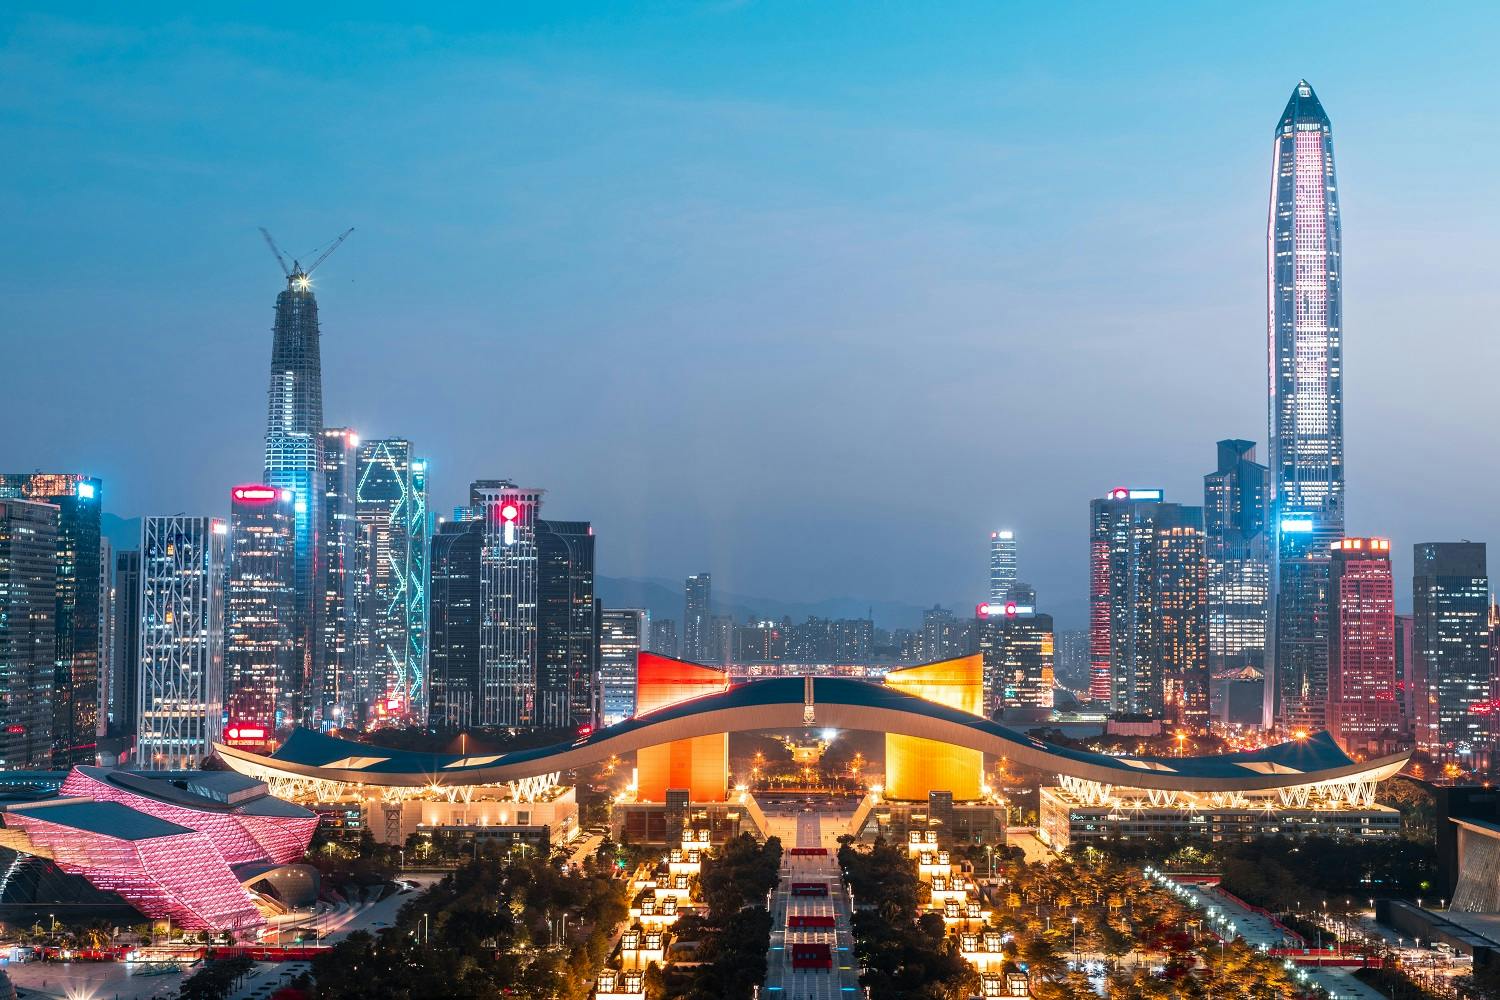 Shenzhen, China: 36m Digital Yuan Wallets Now Open